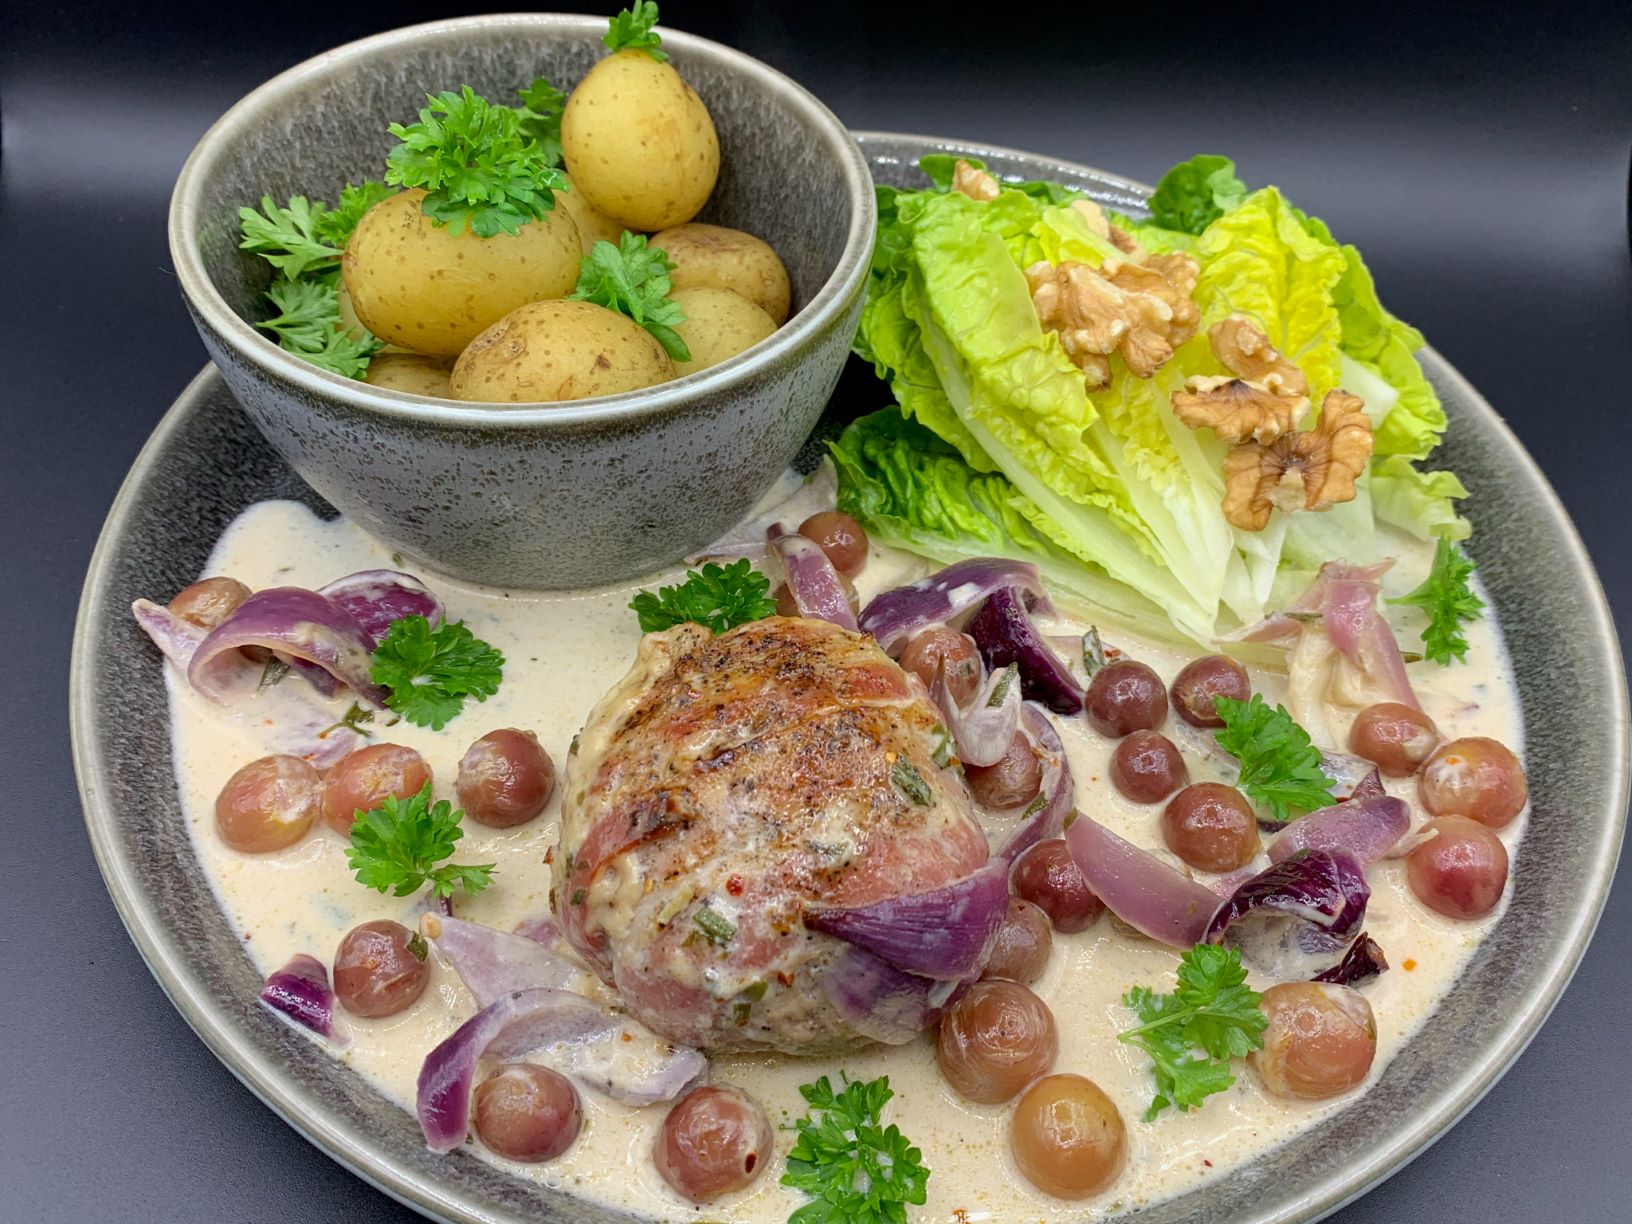 Karbonader i vindrueflødesauce med estragon og rosmarin samt nye kartofler og hjertesalat med valnødder